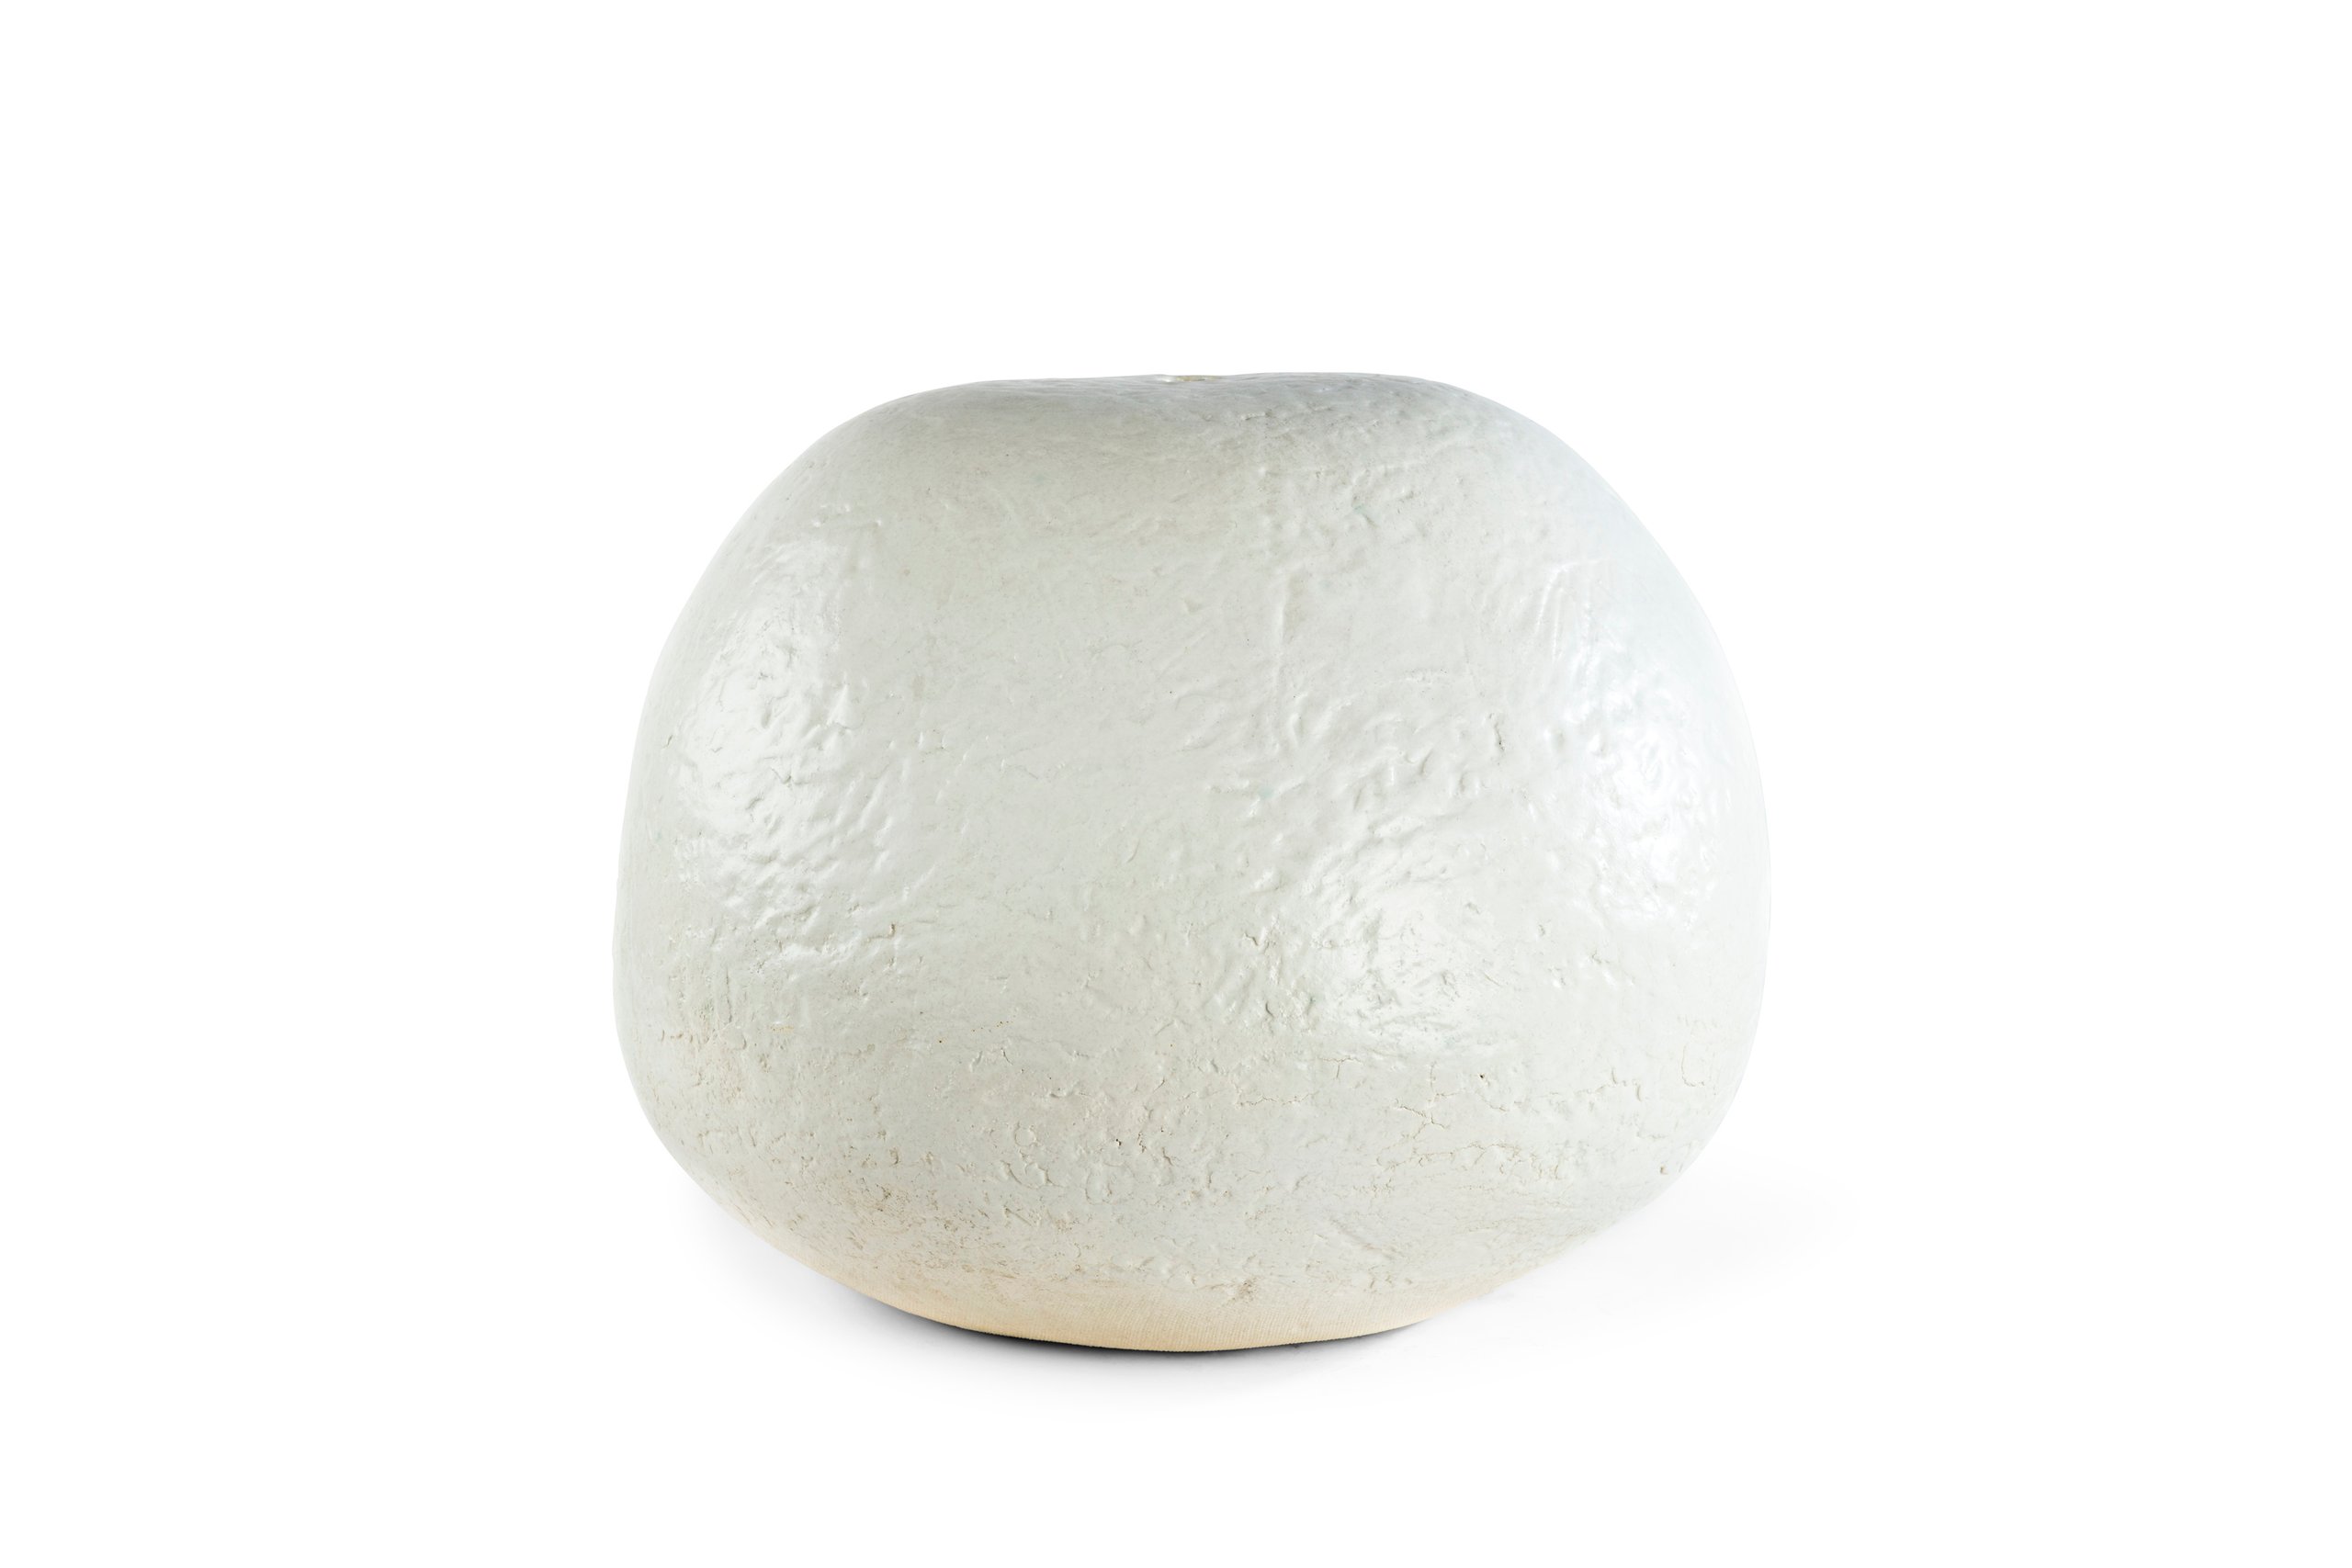 Ceramic form 'Gazi V' made by Marea Gazzard